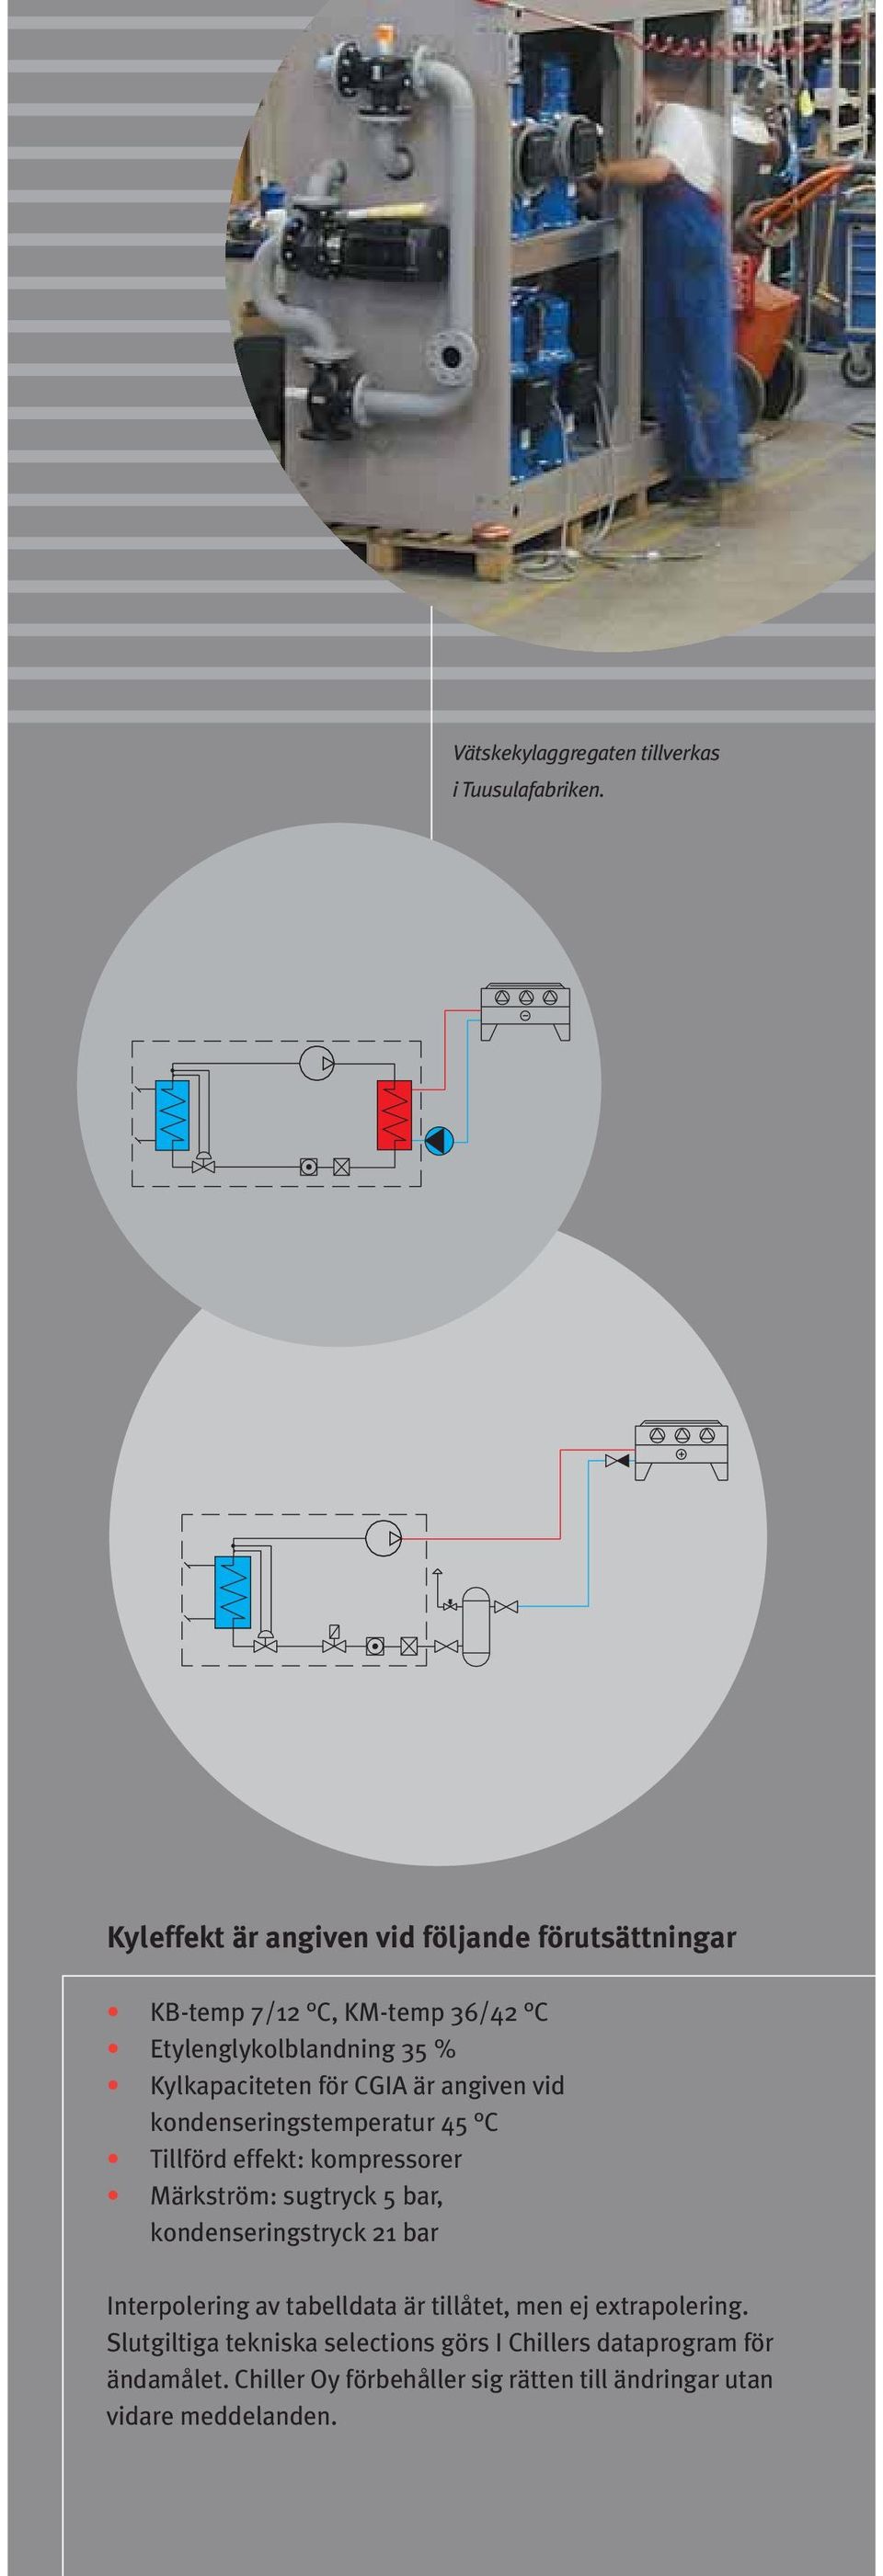 CGIA är angiven vid kondenseringstemperatur 45 C Tillförd effekt: kompressorer Märkström: sugtryck 5 bar, kondenseringstryck 21